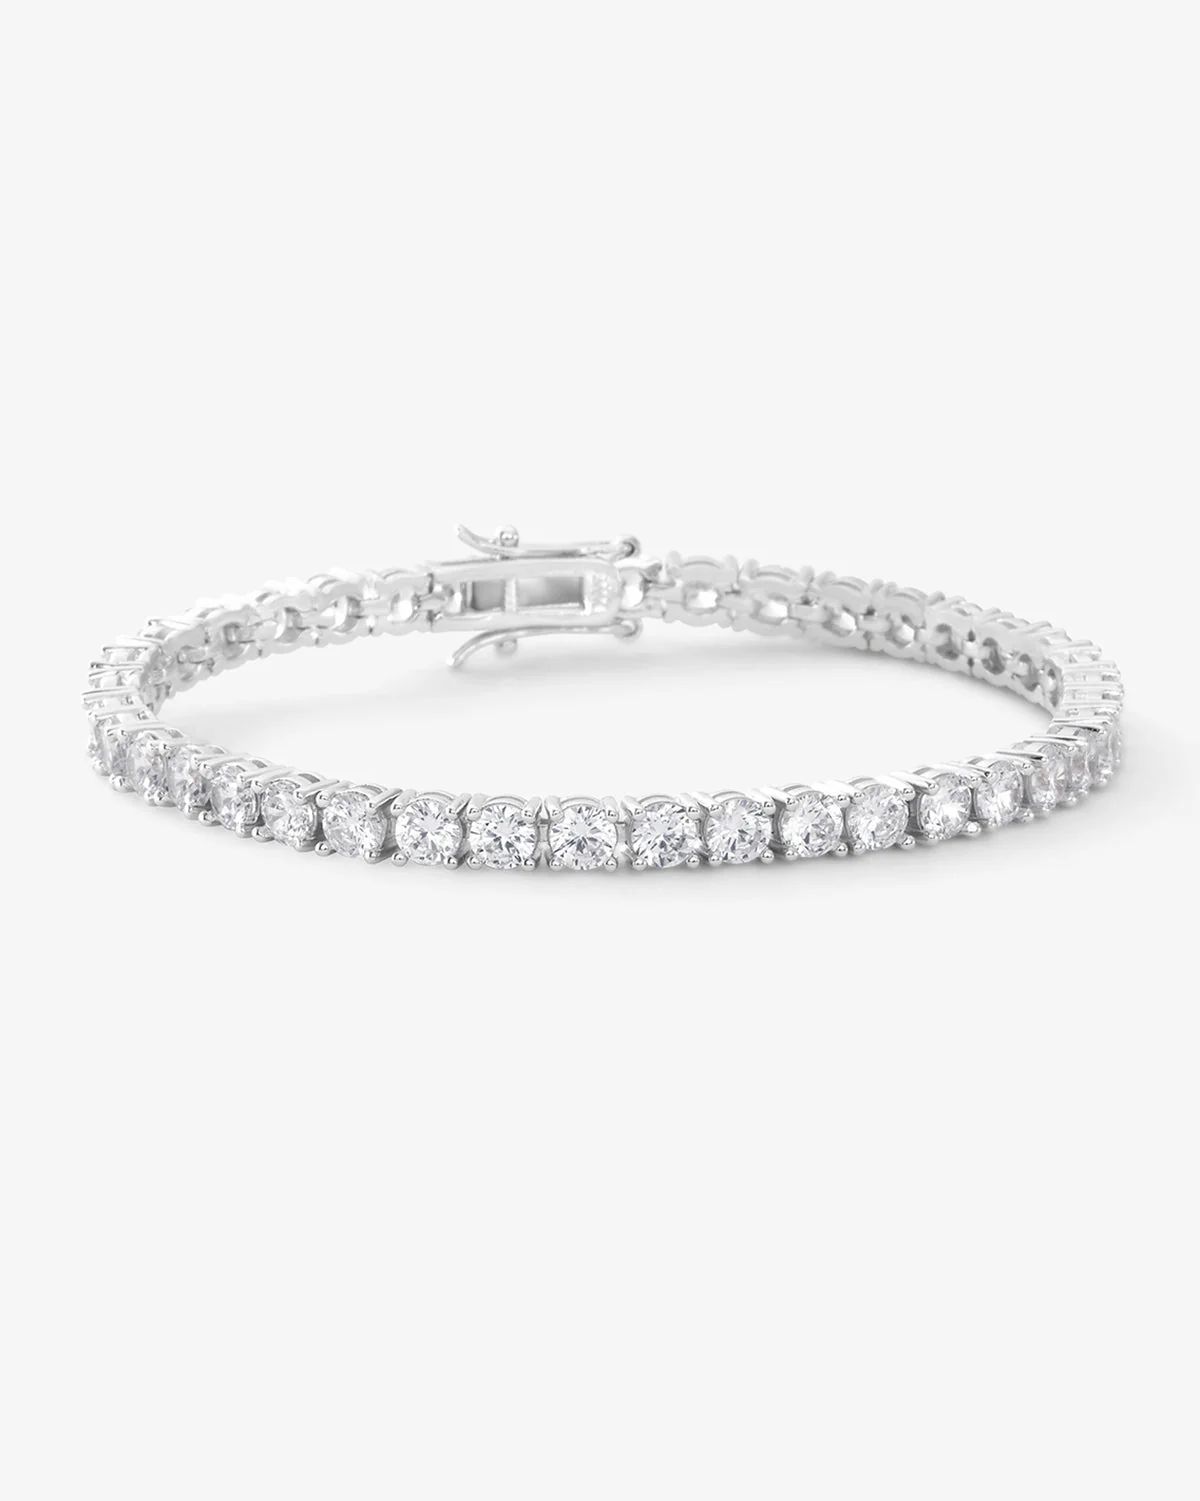 Grand Heiress Tennis Bracelet - Silver|White Diamondettes | Melinda Maria